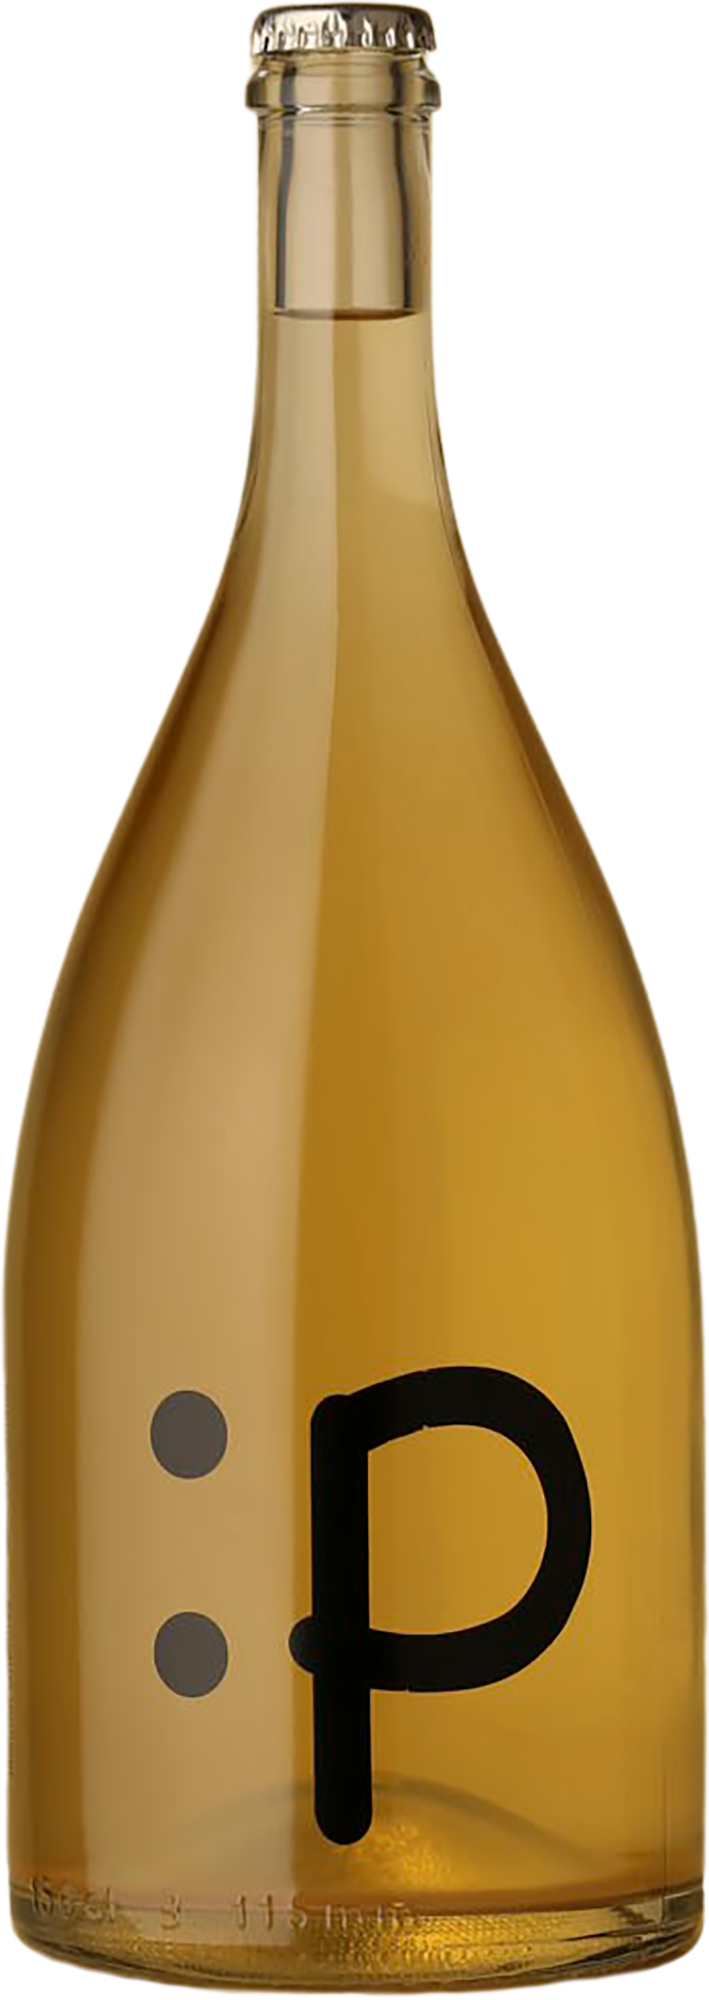 Lansdowne - Super Plonk 1500mL Pét Nat 2021 Sparkling Wine